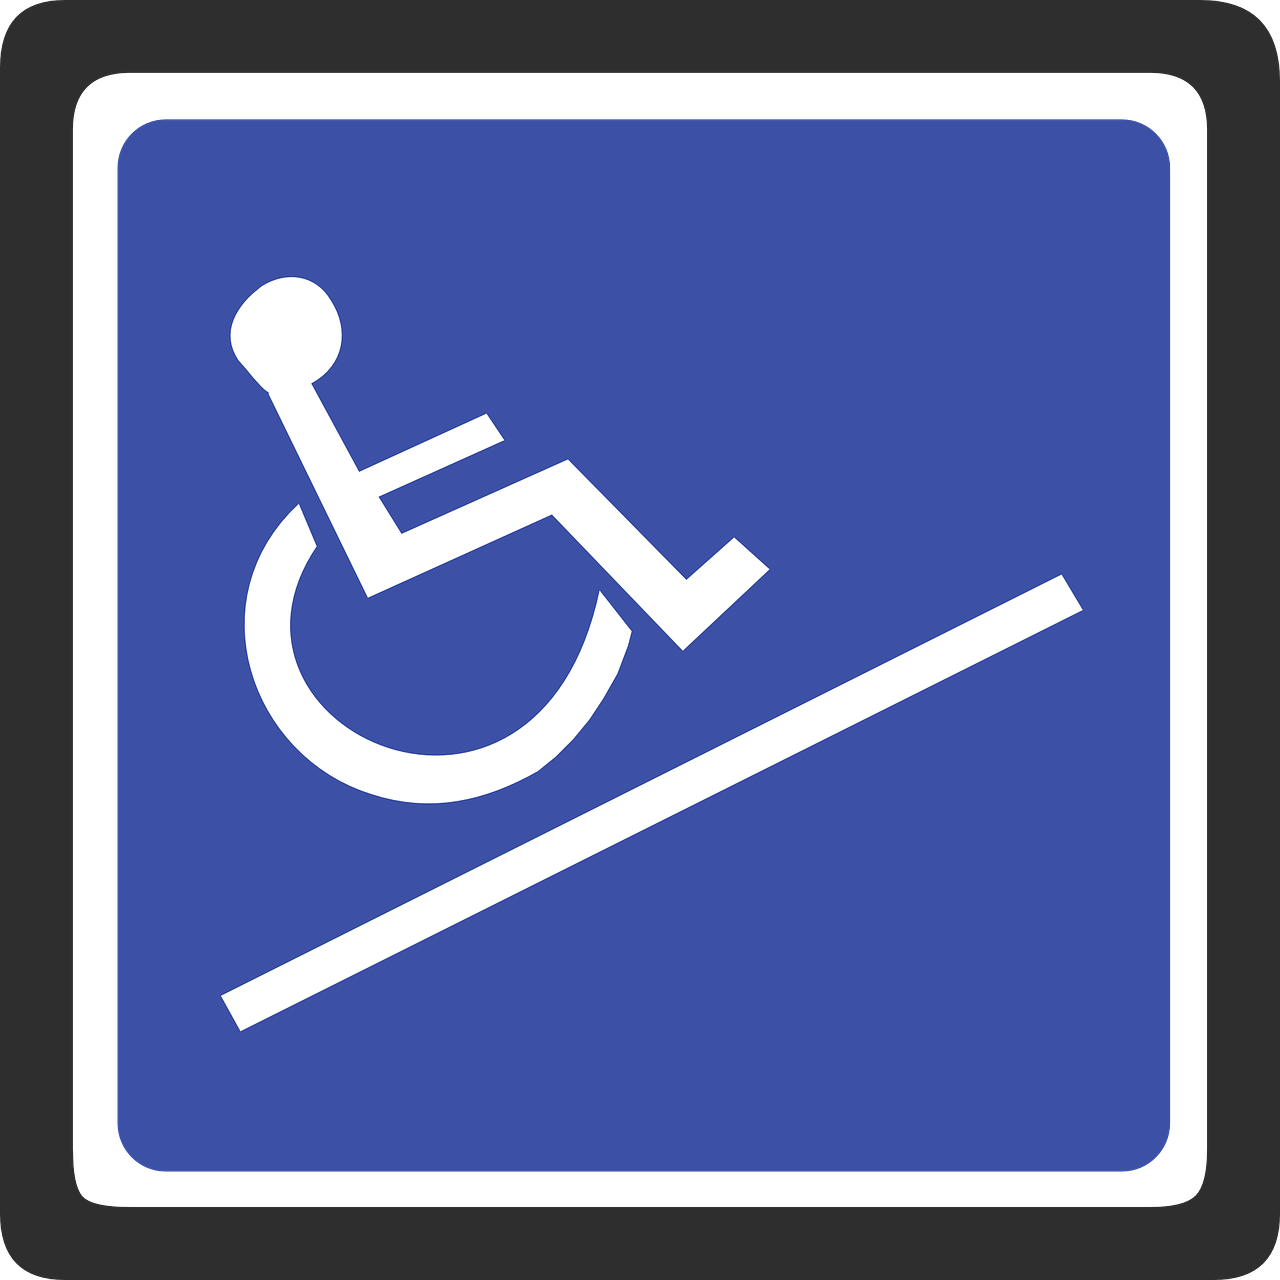 DBM Achterhoek BV instelling gehandicaptenzorg verstandelijk gehandicapten beoordeling